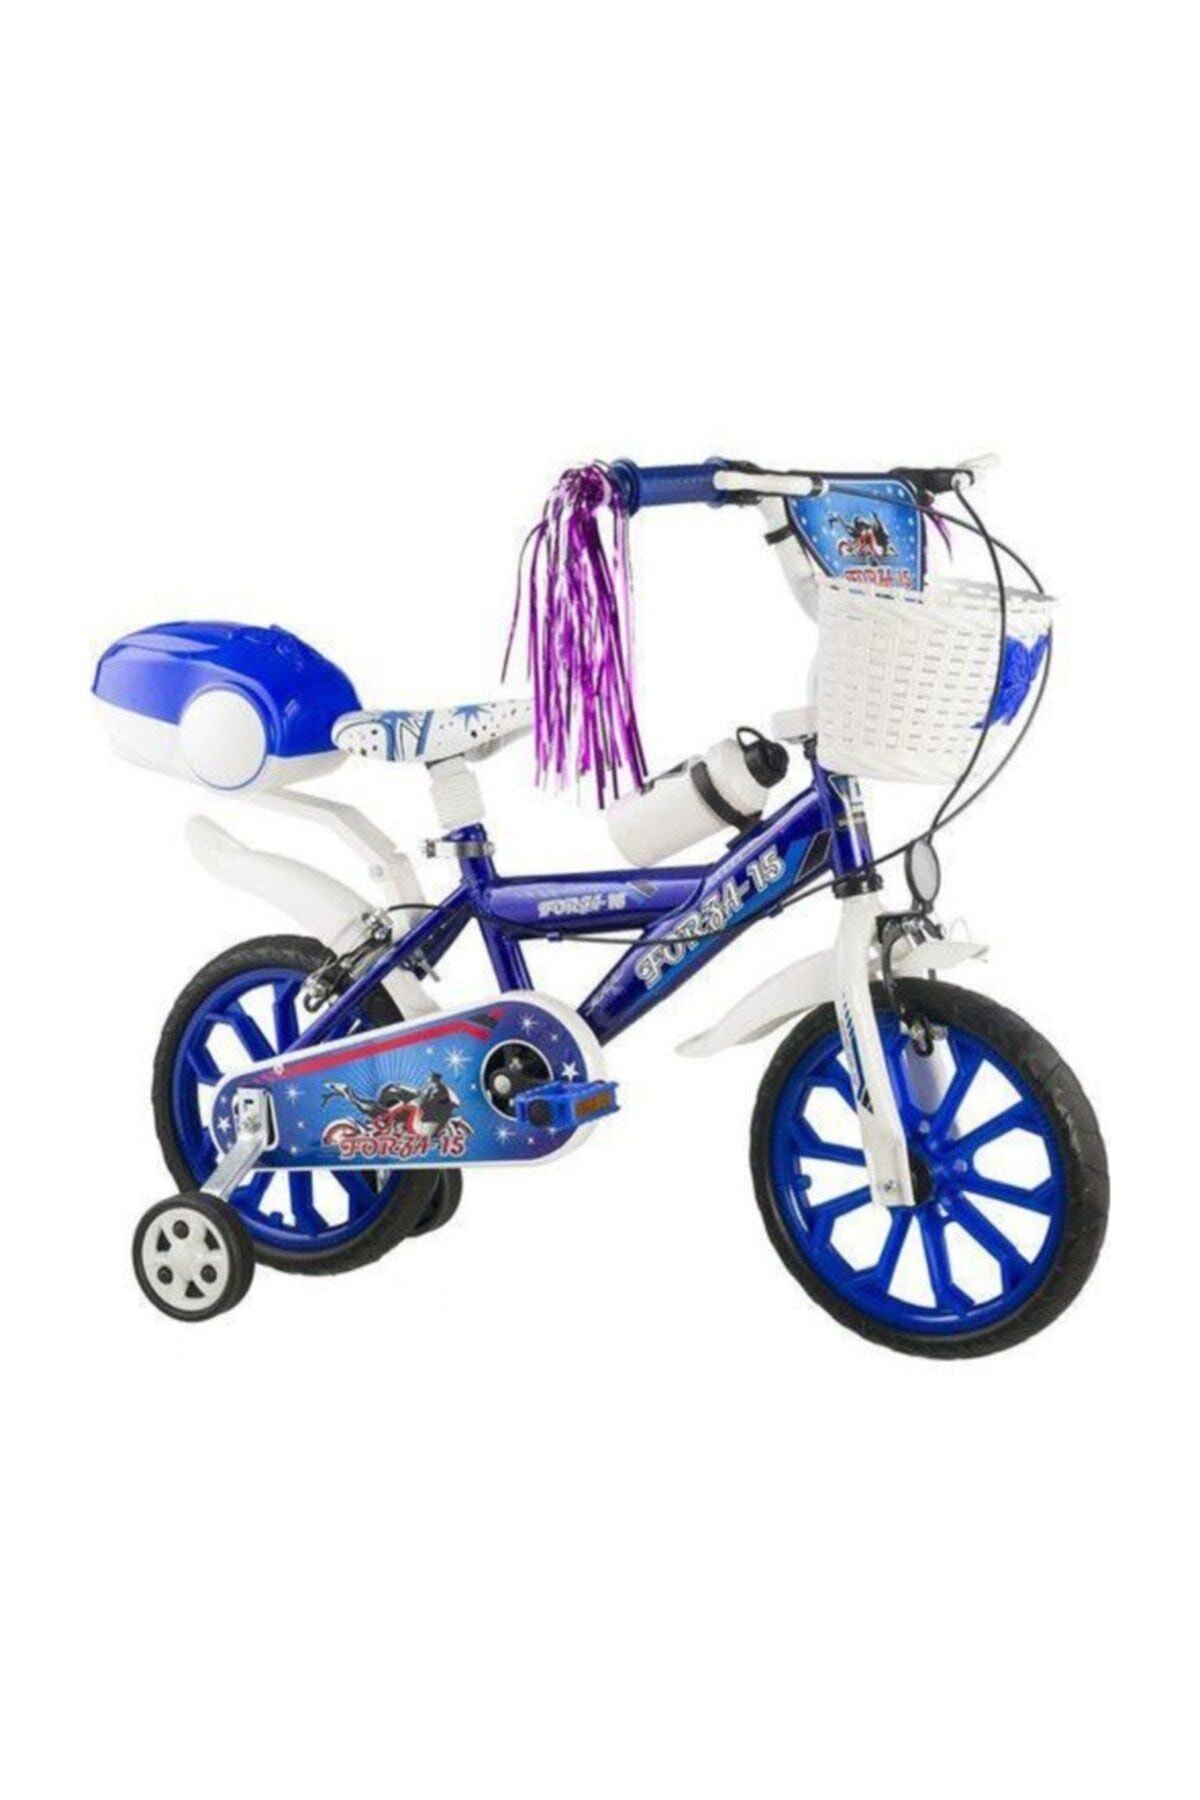 15 Jant Bisiklet Çocuk Bisikleti 4-7 Yaş Arası Forza(Mavi)